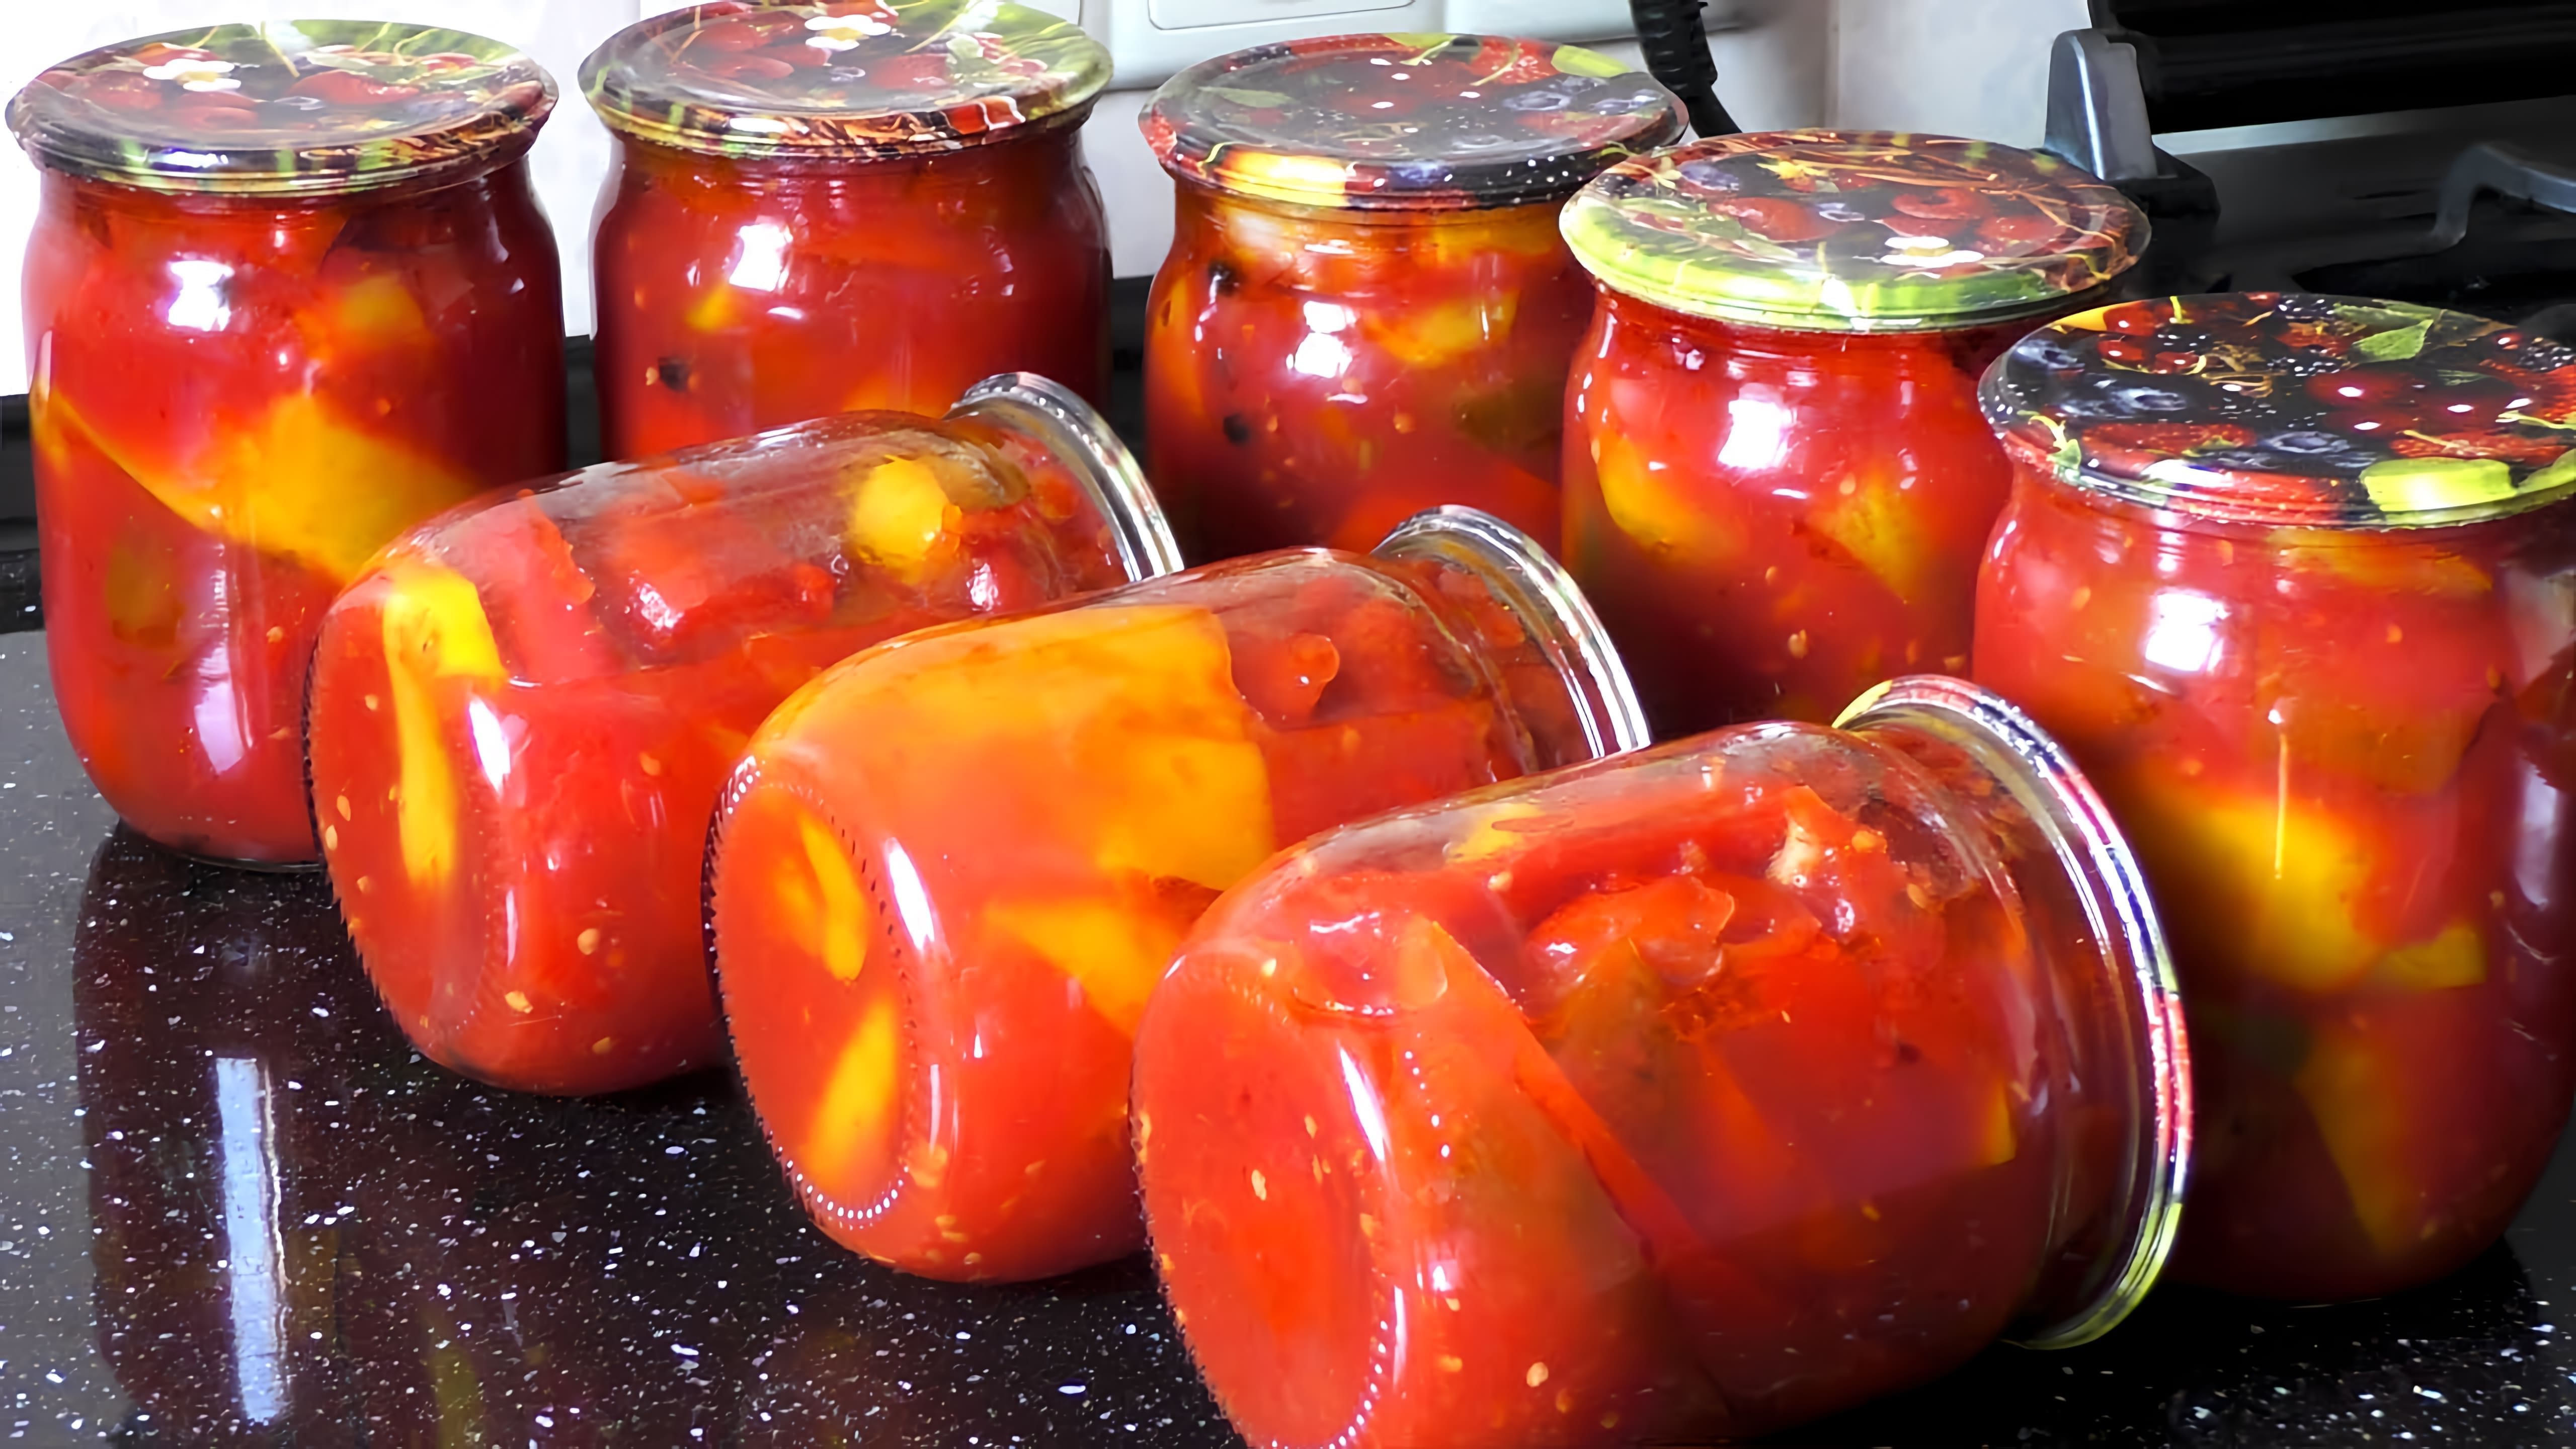 Видео как приготовить маринованный перчик под названием лечо, который представляет собой сладкий перчик и томатный соус